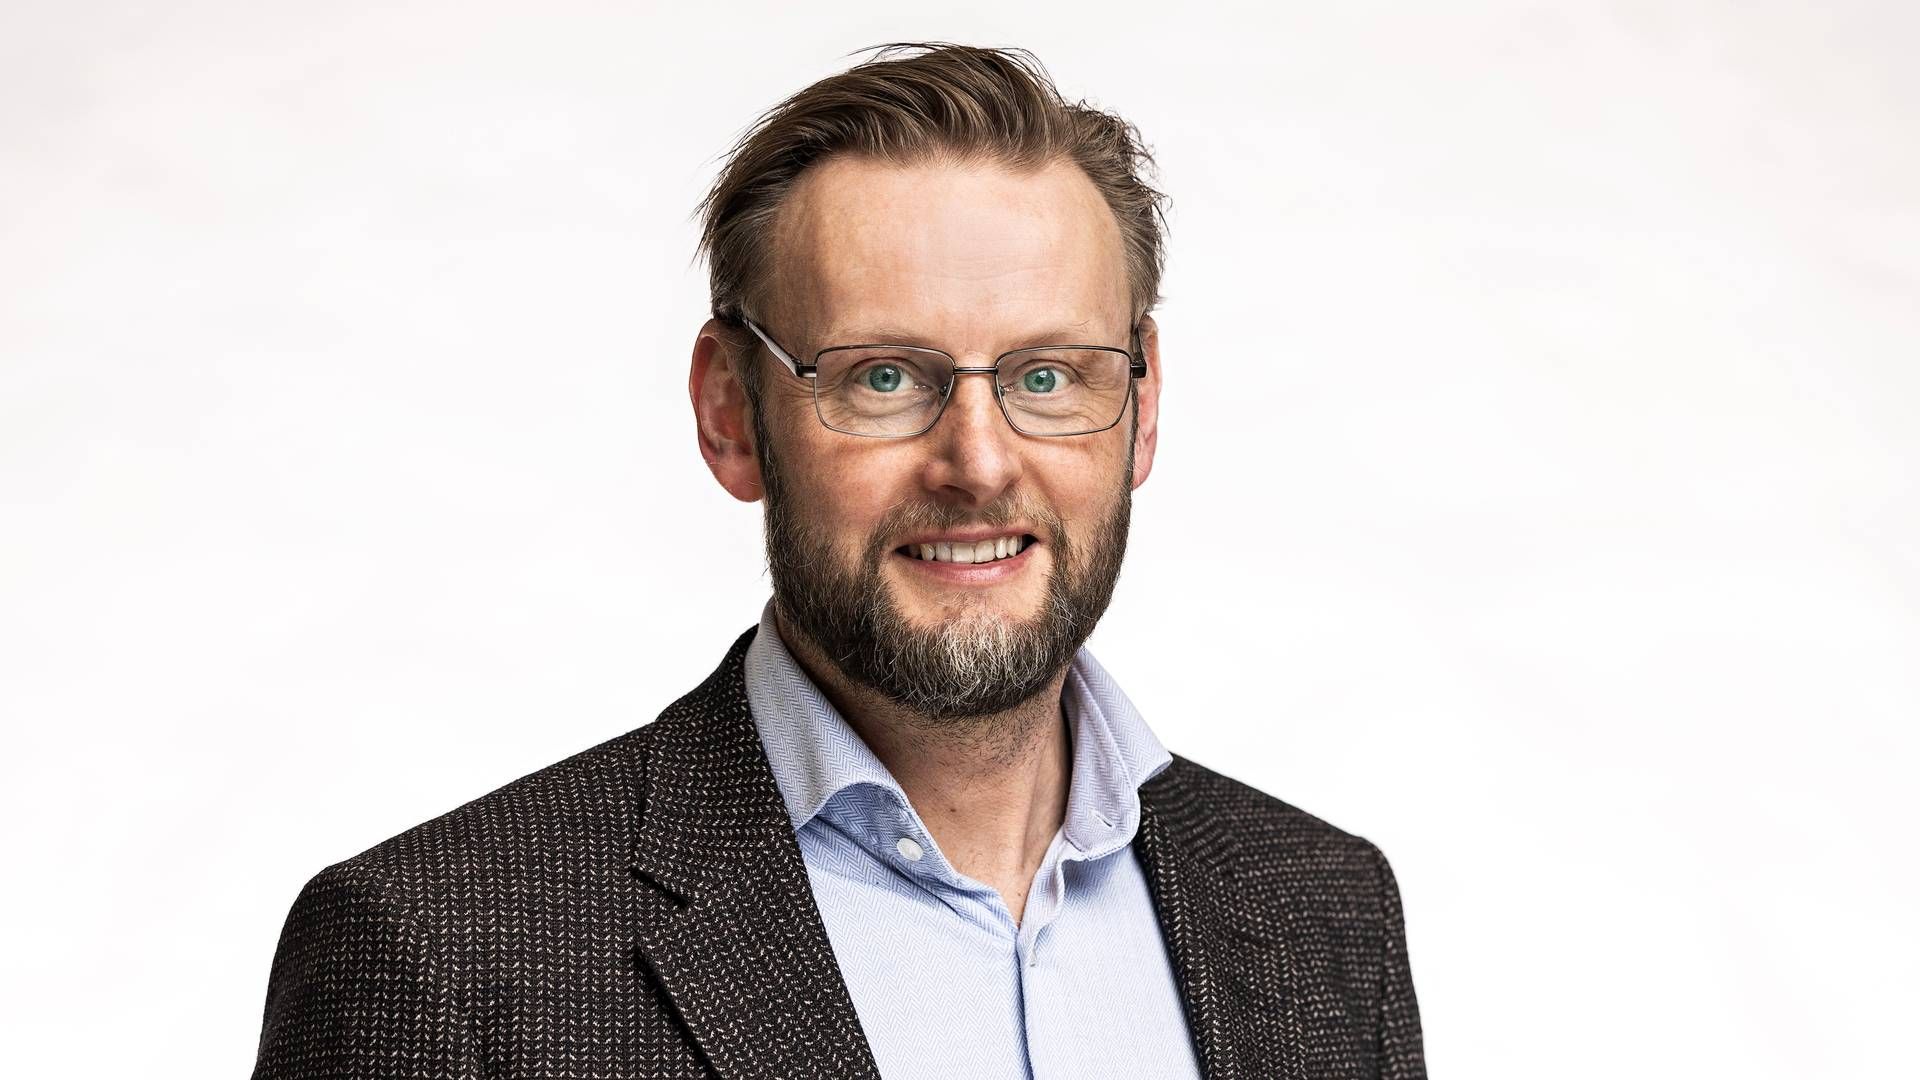 Bøje Kjær har hidtil være vicekoncerndirektør for DLG's supply chain-afdeling. Pr-foto: DLG